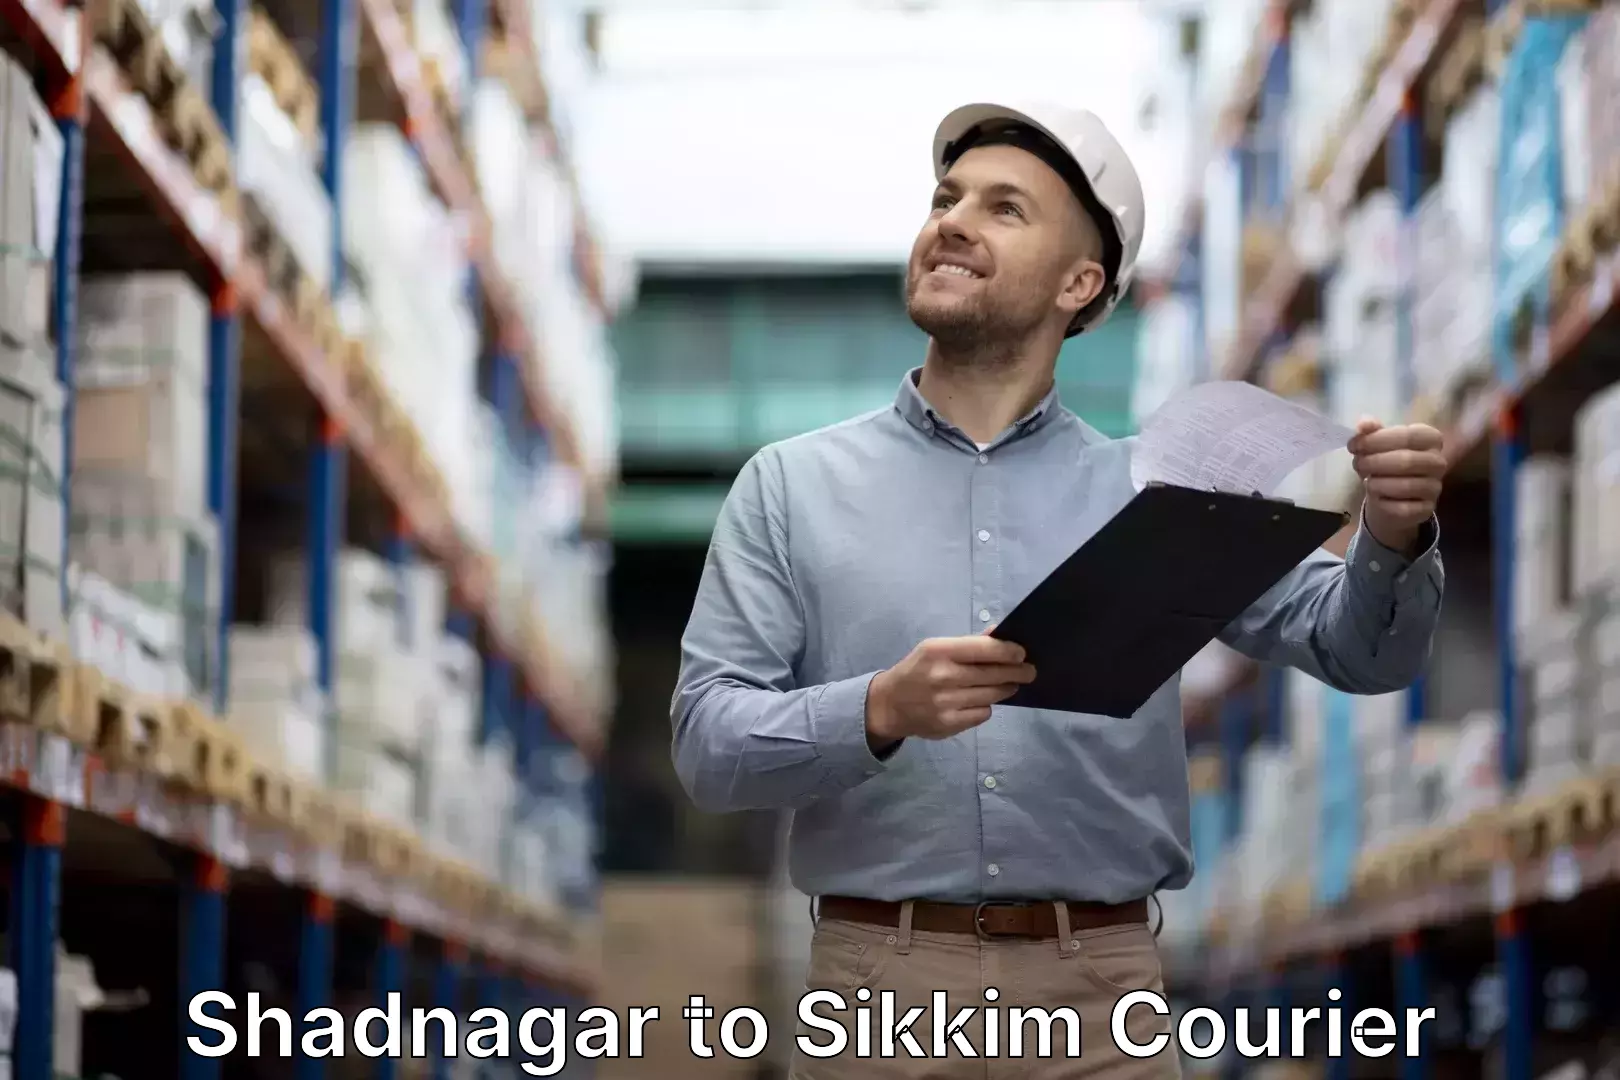 Baggage shipping service Shadnagar to Mangan